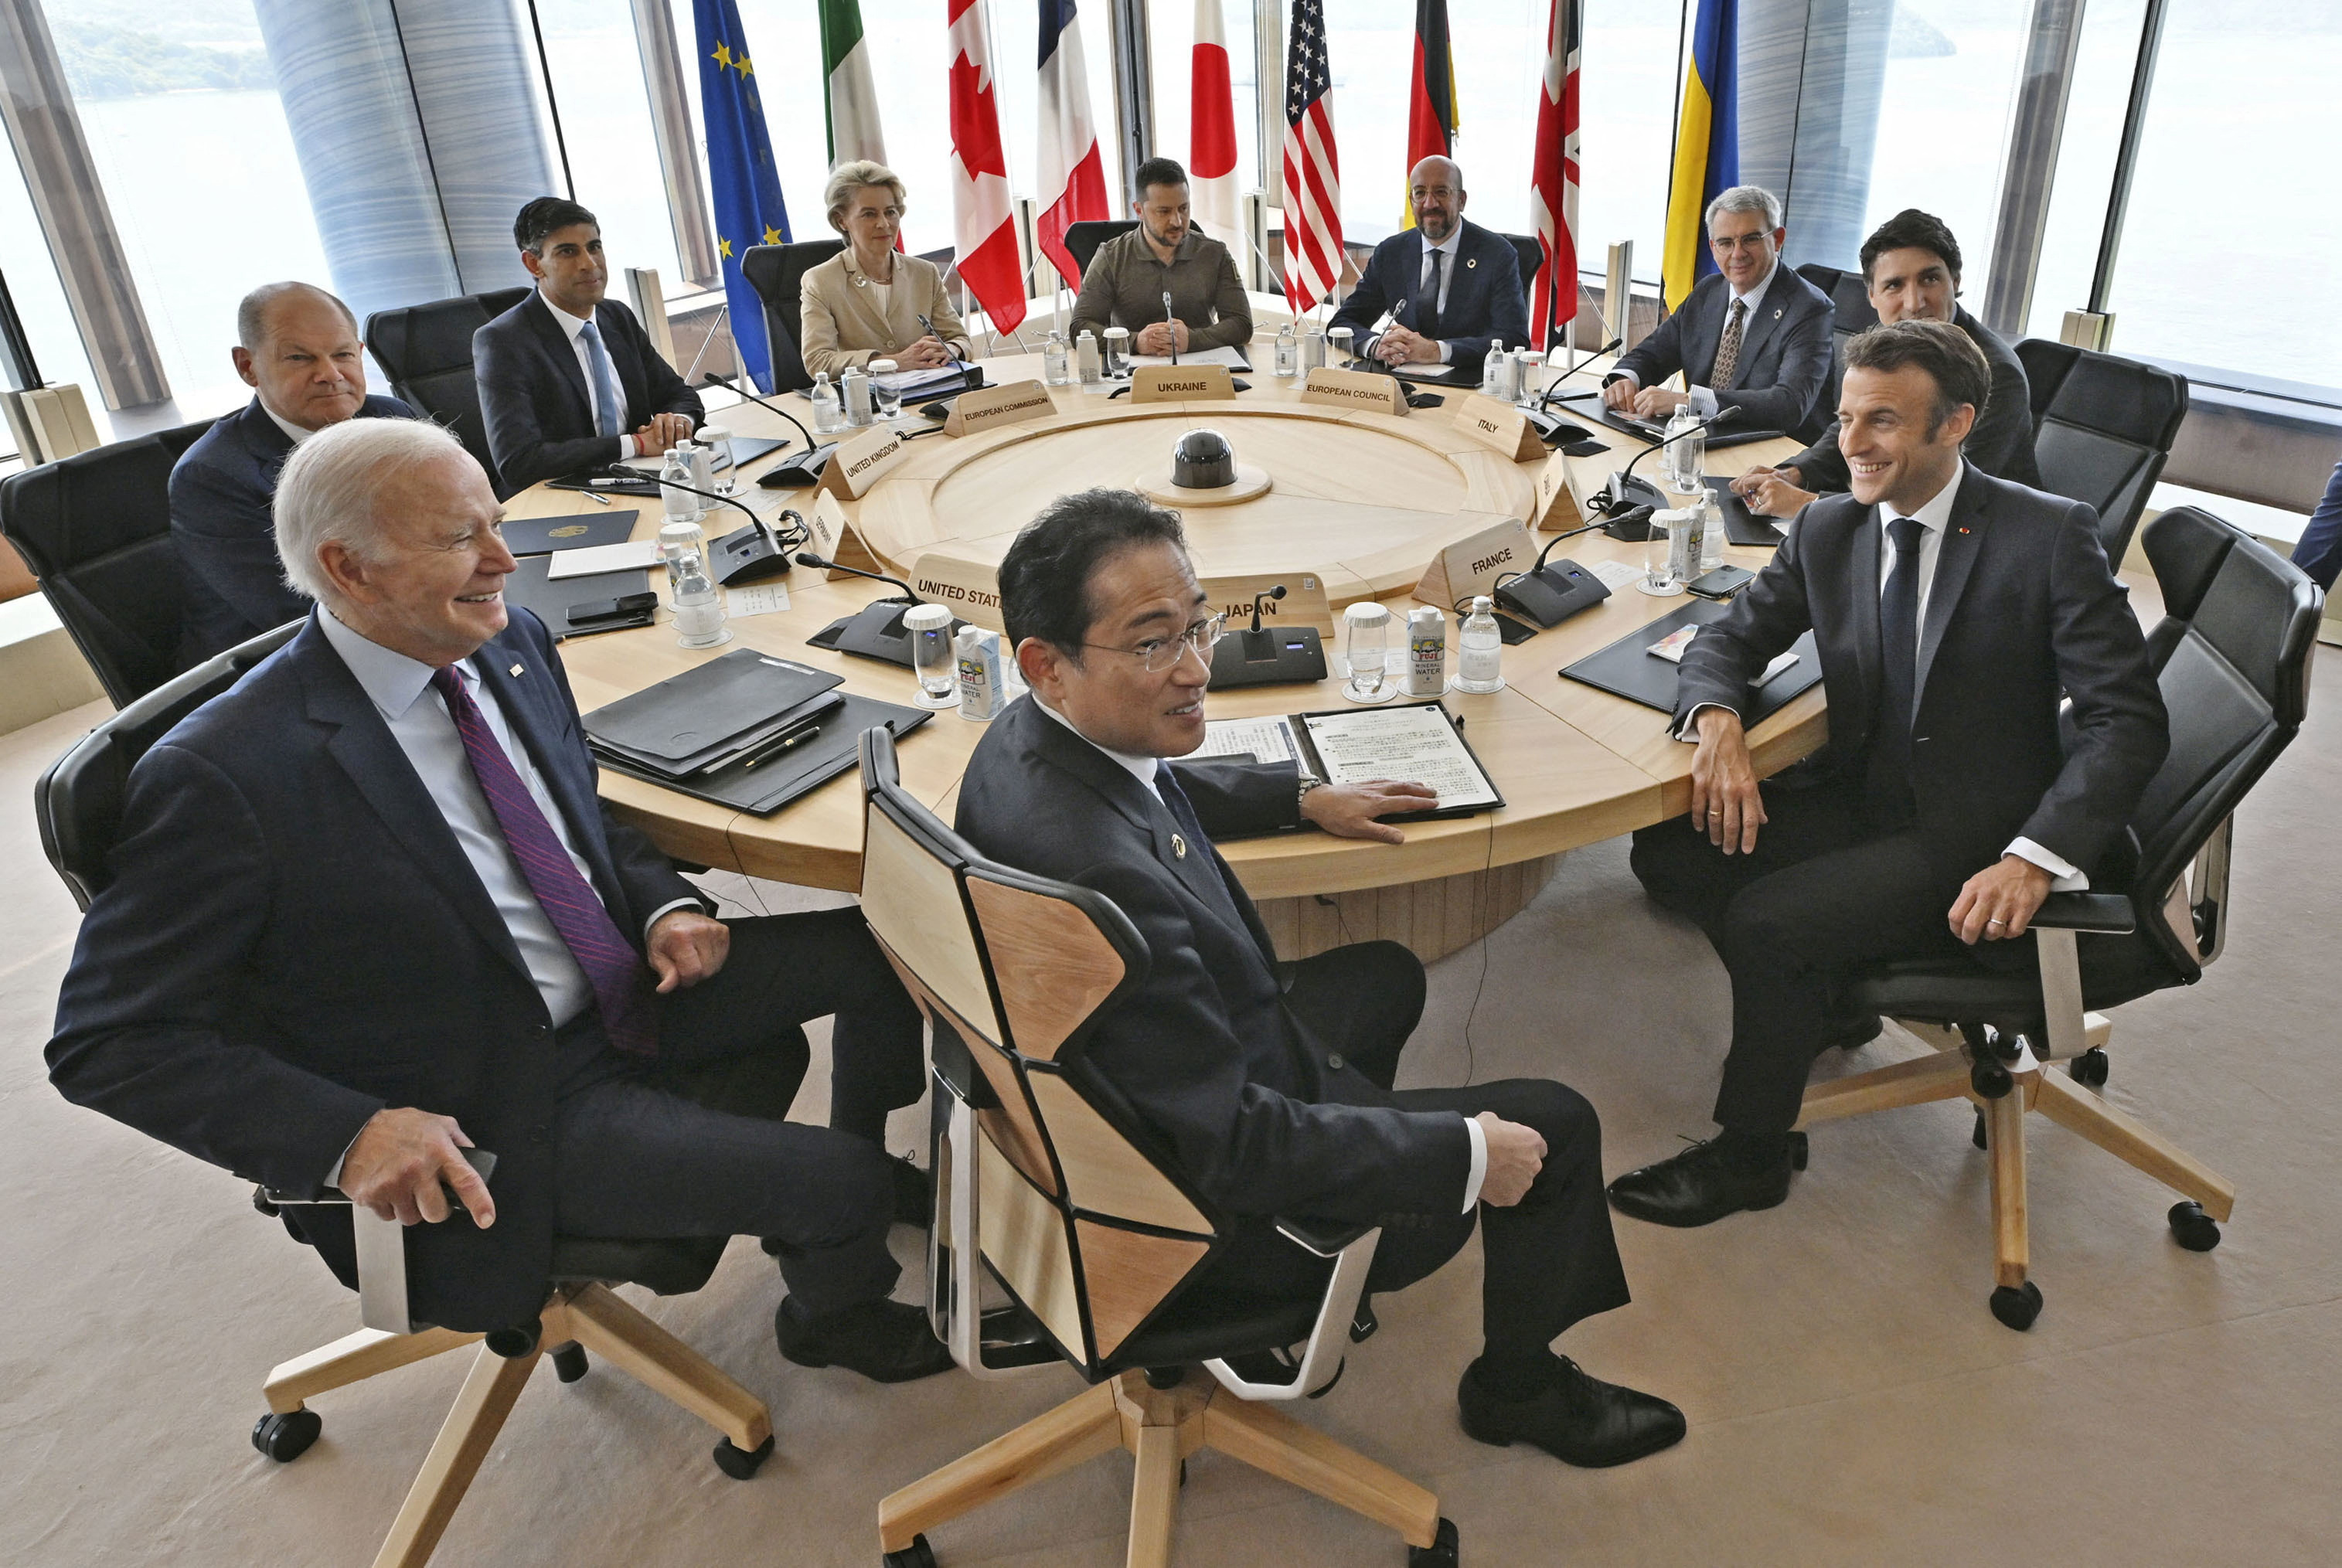 Zelensky aseguró que el poder de las democracias “está creciendo” tras la reunión de líderes del G7. (REUTERS)